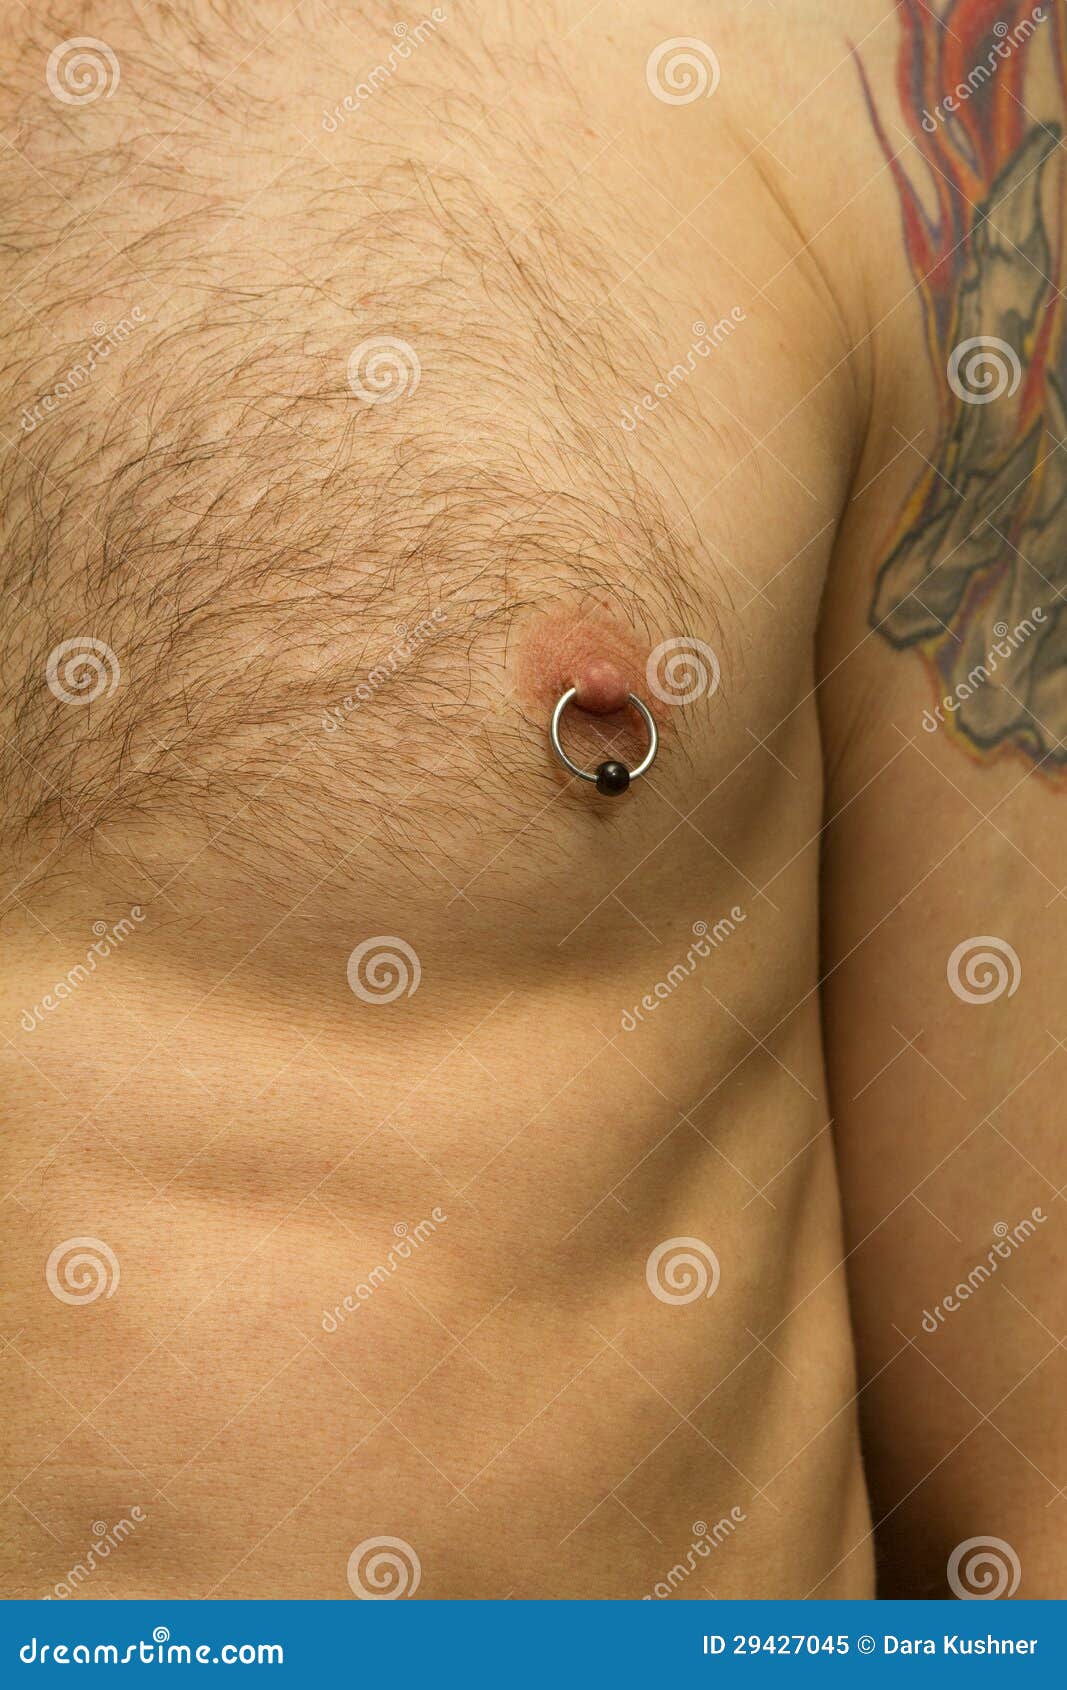 уплотнение в груди у мужчин фото 64